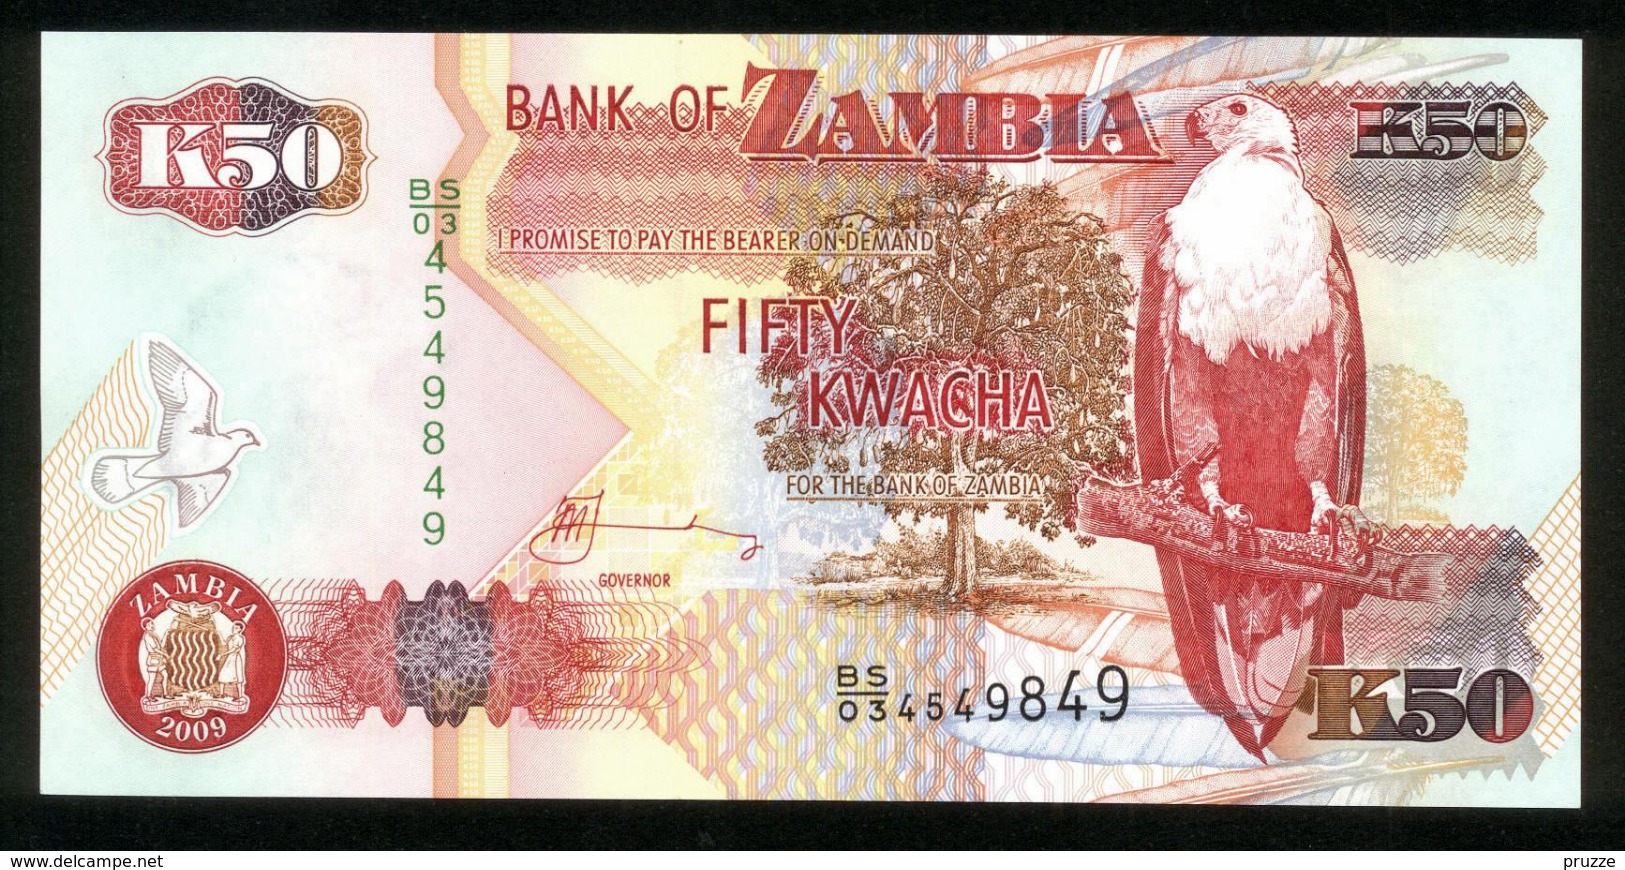 Sambia - Zambia 2009, 50 Kwacha - UNC - BS 03 4549849 - Zambia